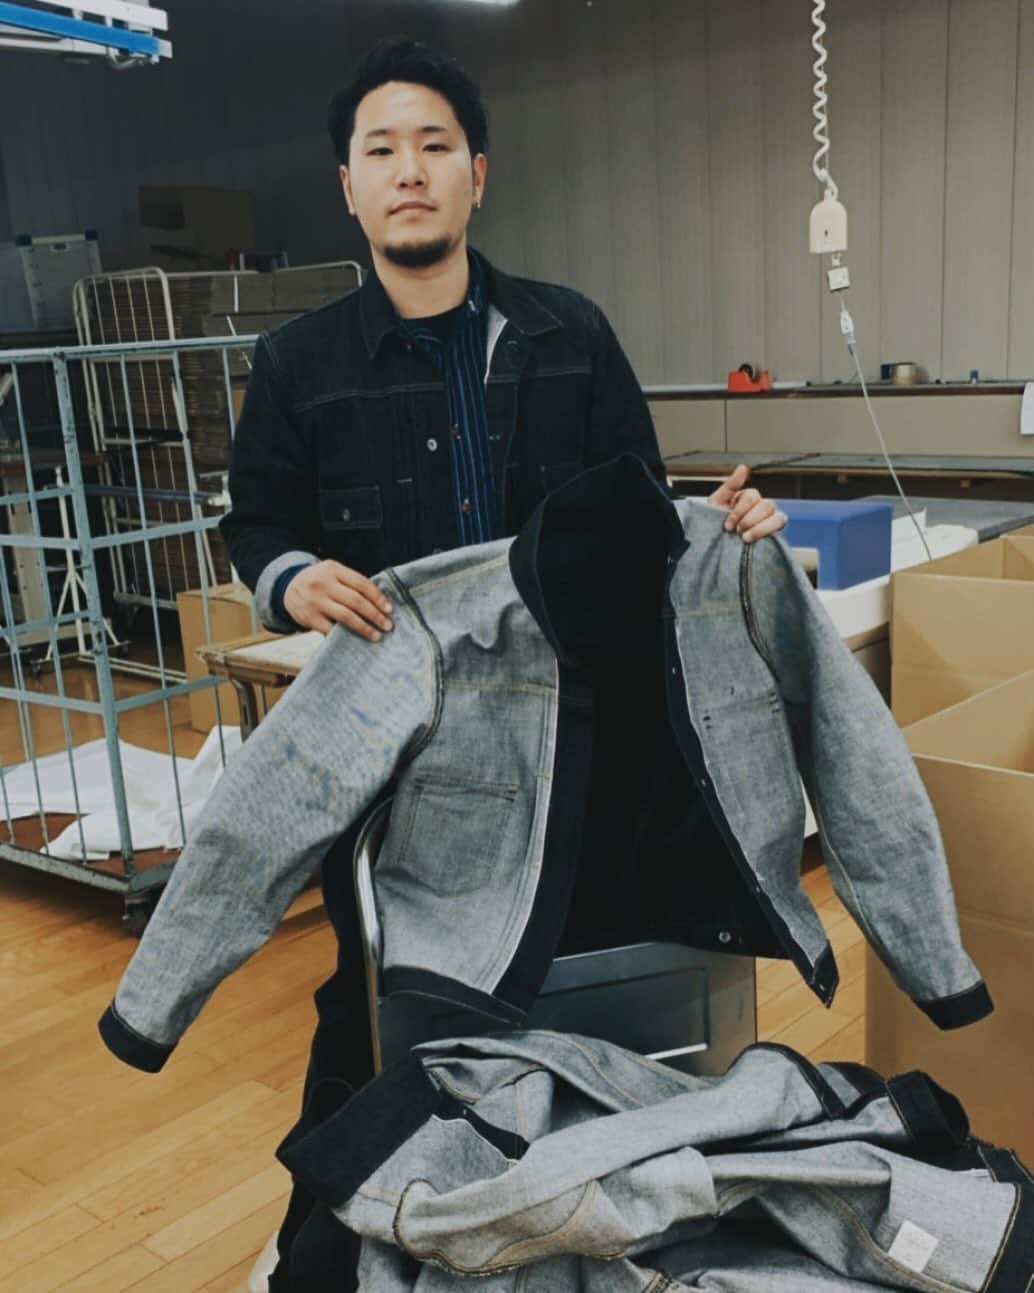 BIG JOHNのインスタグラム：「毎度です！  先日、高知県にあるじぃんず工房大方さんの所にお邪魔させていただきました。 ここでは、ビッグジョンの主要ジーンズであるRAREをはじめ、様々なジーンズなどを縫ってもらっております。 その時は運が良く、17OZのジャケットを縫製中との事で、その時17OZを履いていたので記念で📸  一から縫製を見学させていただきとても勉強になりました。 社長をはじめ、従業員の皆様。 お忙しいところ時間を作って頂き誠に有難うございました。  A Pioneer in Japanese Jeans   -BIG JOHN- From KOJIMA to the world.  ◽️TOYOTA @bigjohnshop  @bigjohnjeans  ◽️A pioneer in Japanese Jeans   -BIG JOHN-    from KOJIMA to the world ◽️   TOYOTA (staff)  #BIGJOHN #bigjohn #RARE#倉敷 #KOJIMA #JEANS #jeans #okayama #denim #TOYOTA #kojimajeans#okayamadenim#japanmade#madeinjapan#original #RAREJEANS  #育てる #ビッグジョン #児島　#ジーンズストリート  #岡山県　#365daysoffade #瀬戸大橋　#indigoinvitational 　#最高の色落ち　#坂本藍聖　#XXXXEXTRA  #姫路　#レザー　#ベルト」